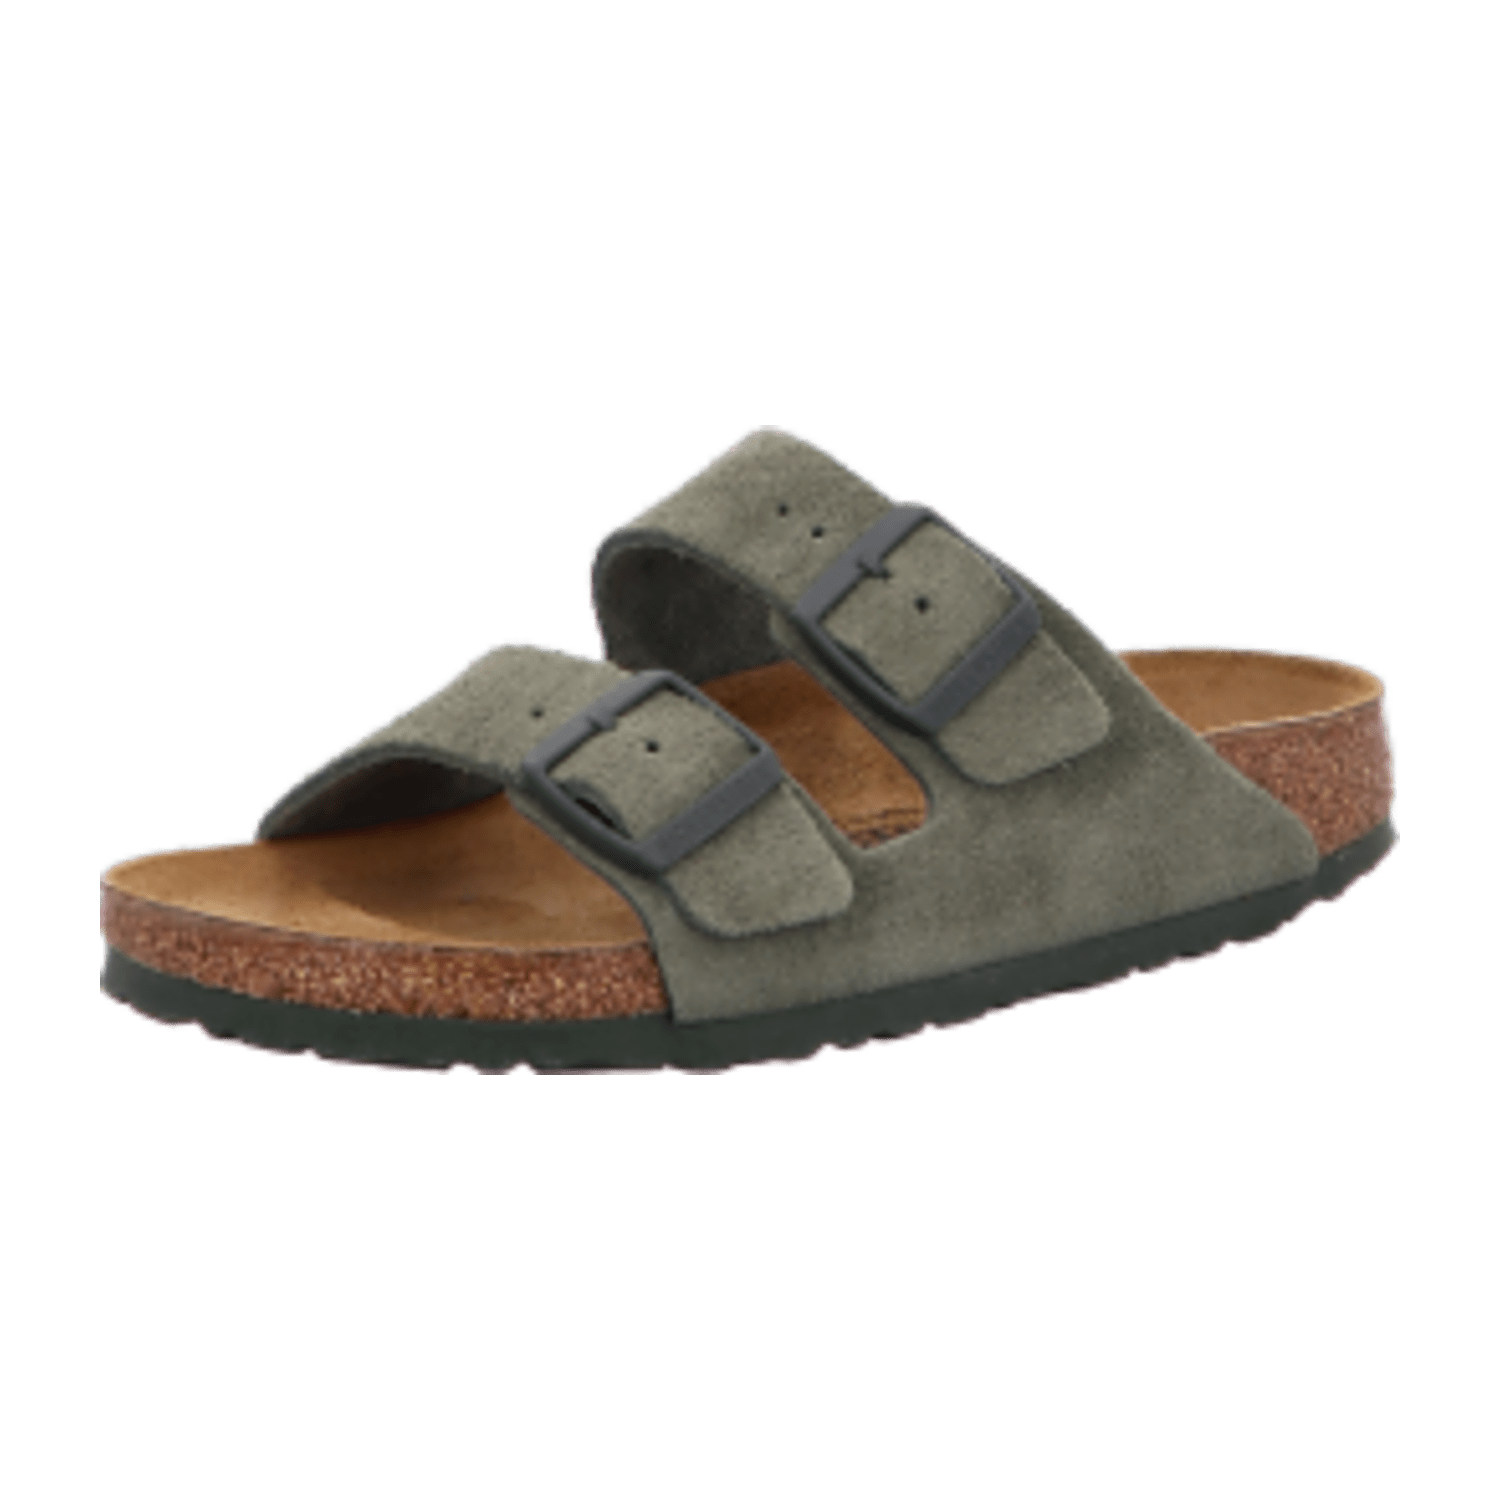 Birkenstock Arizona BS[Sandals]